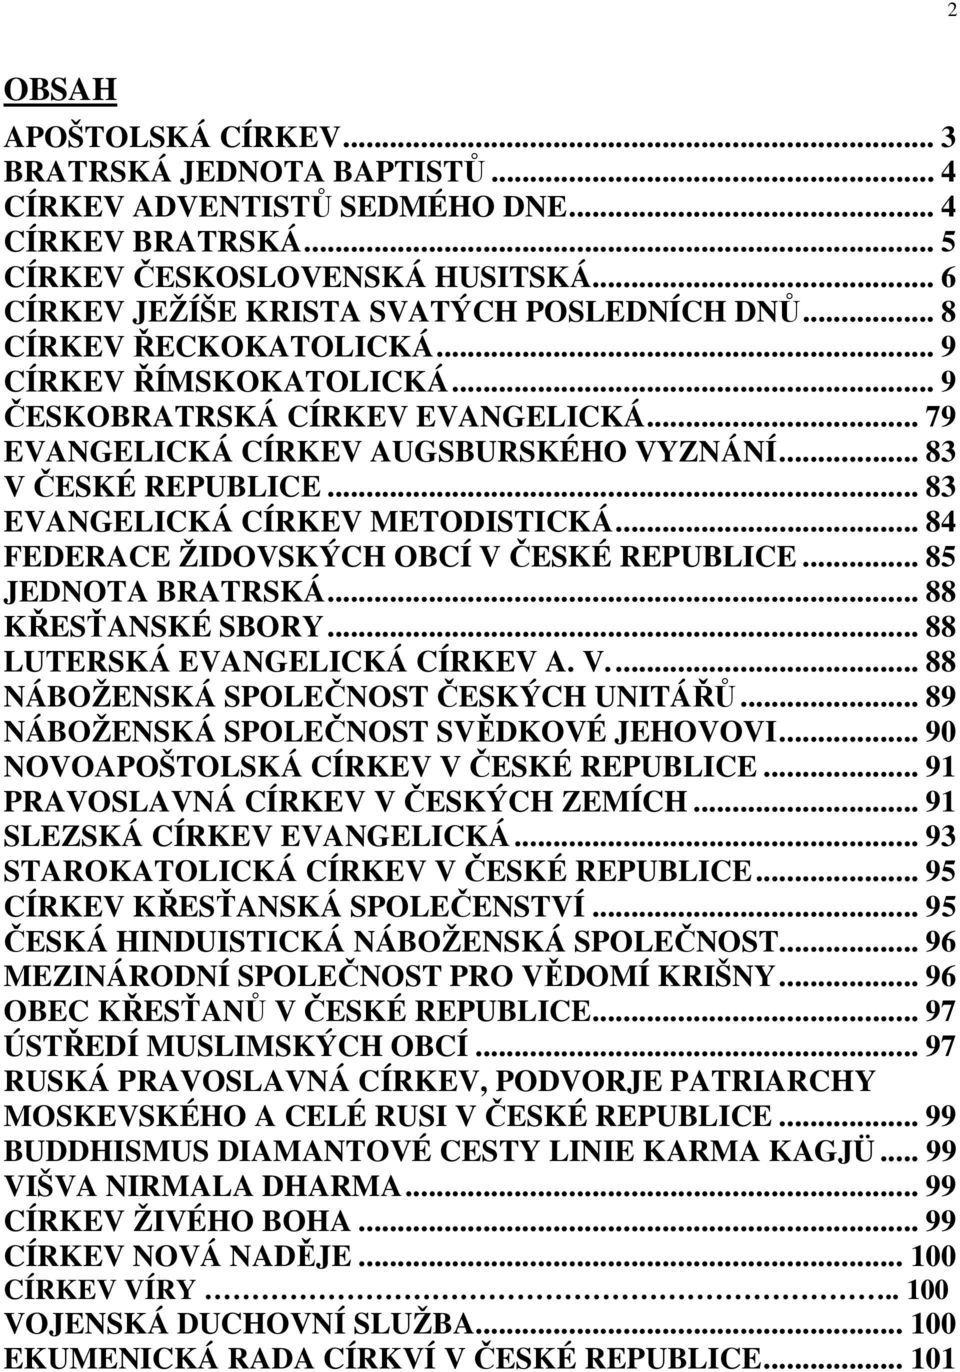 .. 84 FEDERACE ŽIDOVSKÝCH OBCÍ V ČESKÉ REPUBLICE... 85 JEDNOTA BRATRSKÁ... 88 KŘESŤANSKÉ SBORY... 88 LUTERSKÁ EVANGELICKÁ CÍRKEV A. V.... 88 NÁBOŽENSKÁ SPOLEČNOST ČESKÝCH UNITÁŘŮ.